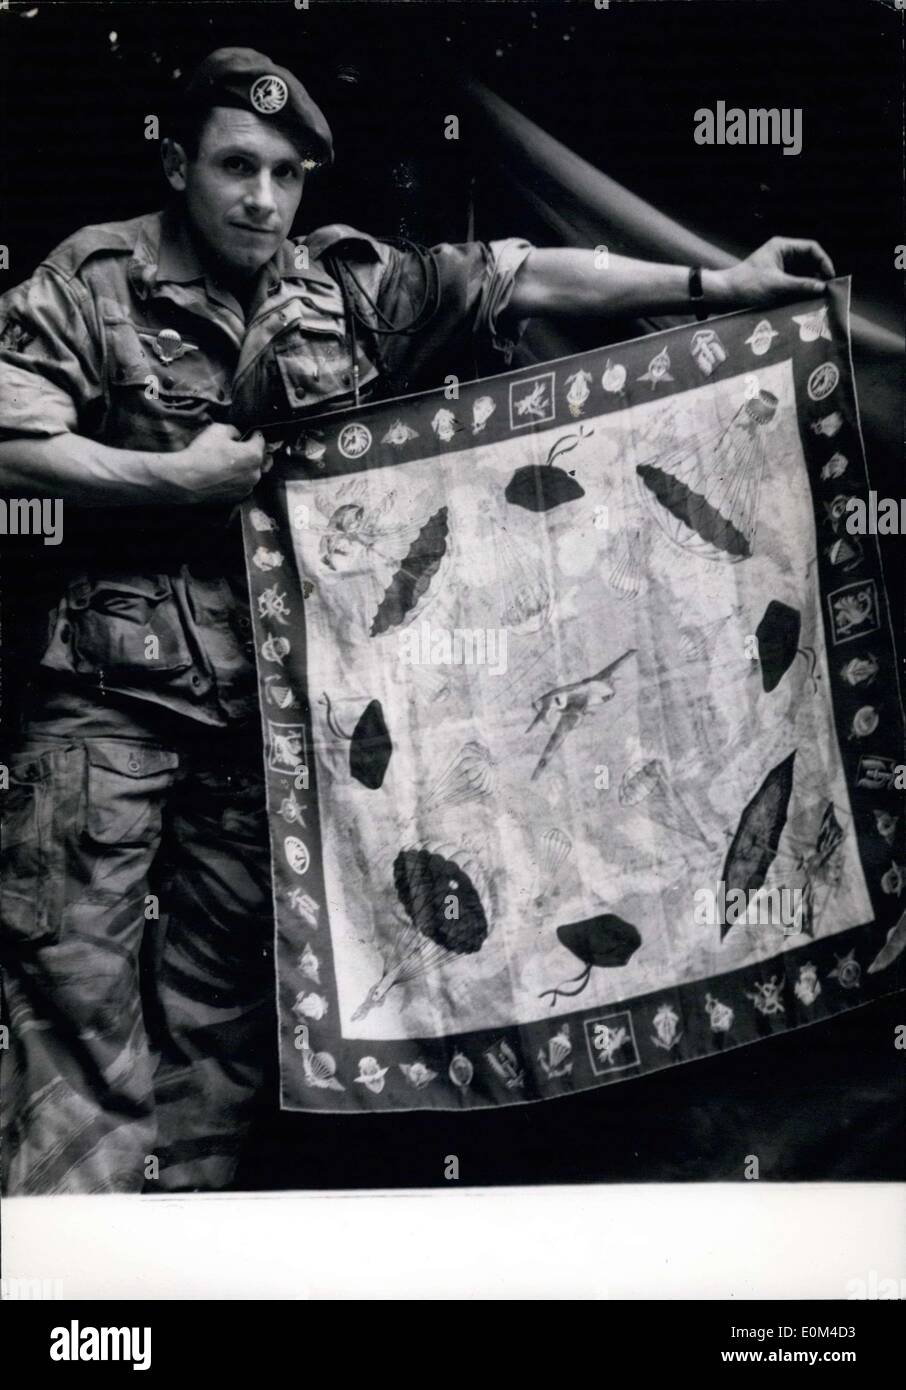 Giugno 16, 1953 - soldato visualizza 527 autografi di stelle sulla sciarpa Foto Stock